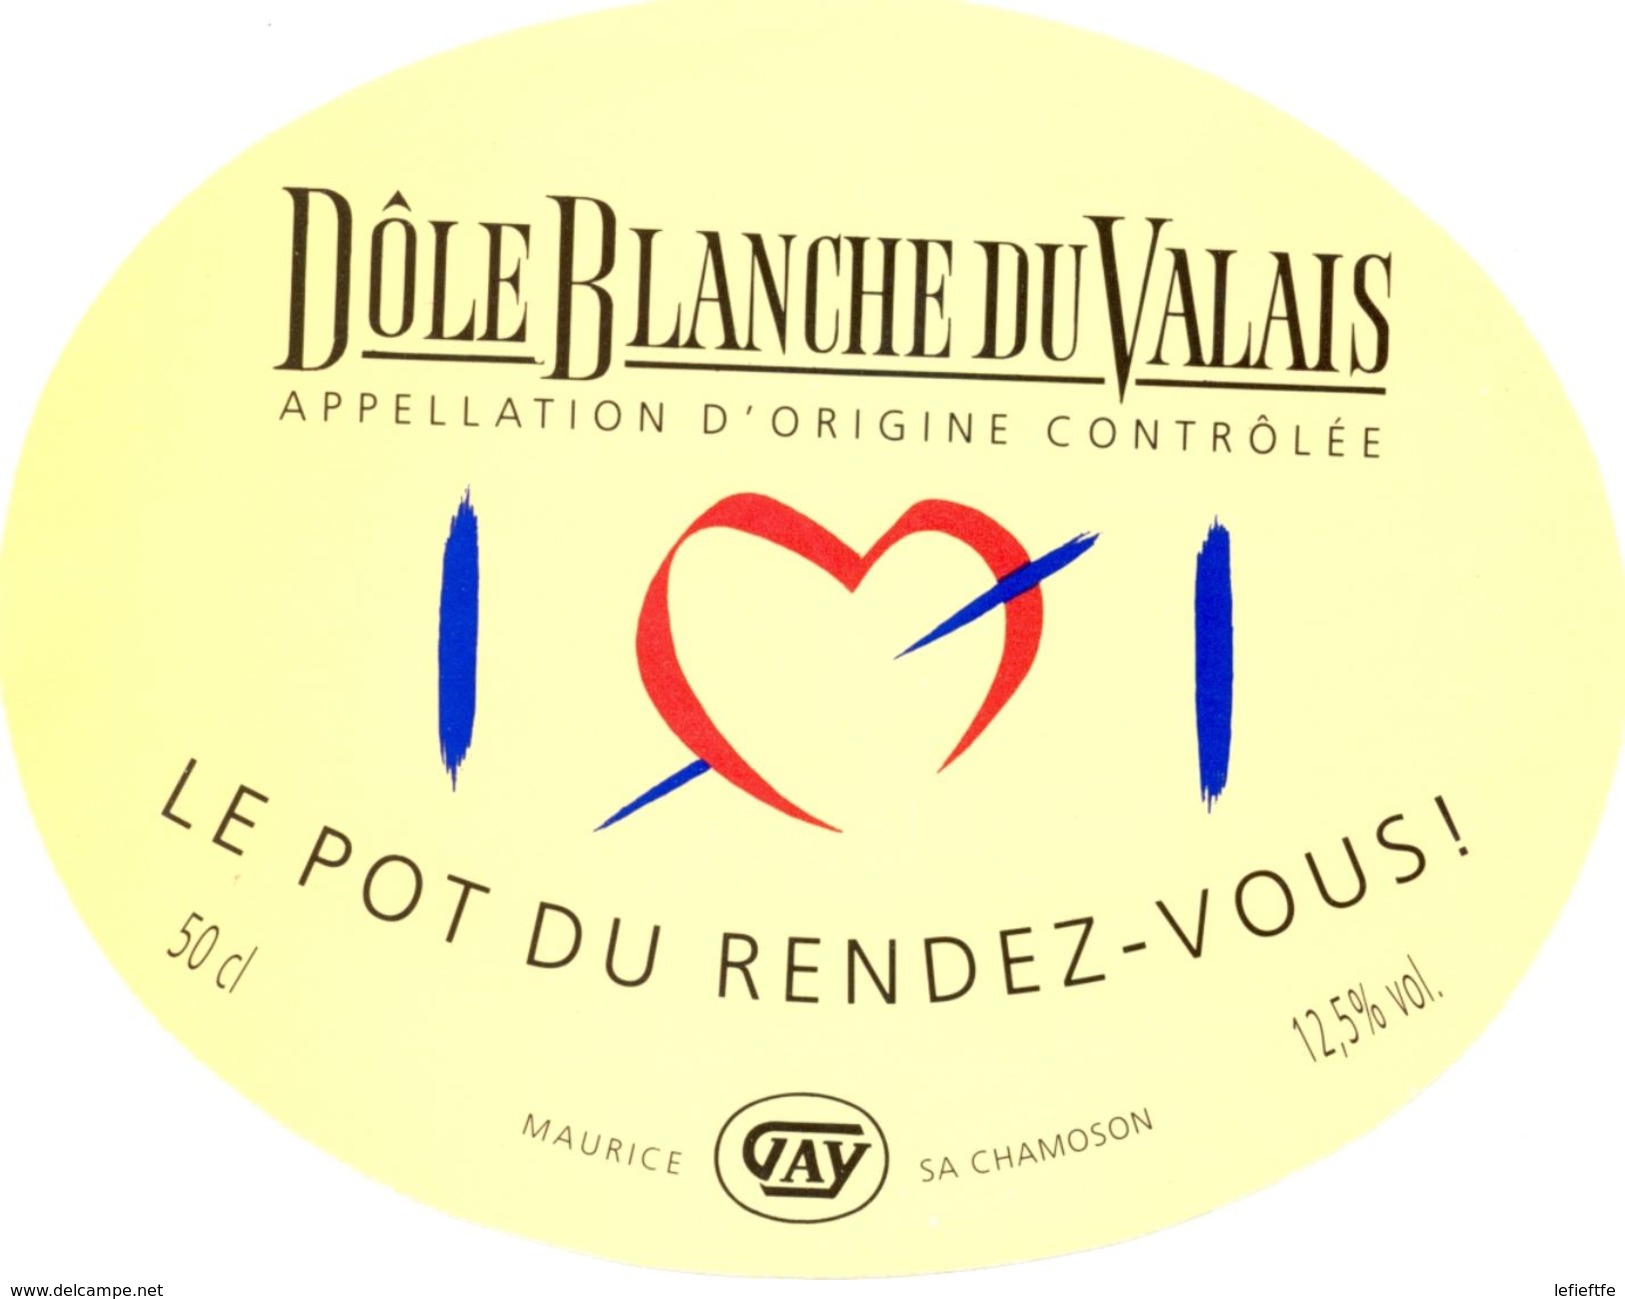 1509 - Suisse - Le Pot Du Rendez-Vous - Dôle Blanche Du Valais - A.O.C.  Maurice Gay - Chamoson - Weisswein